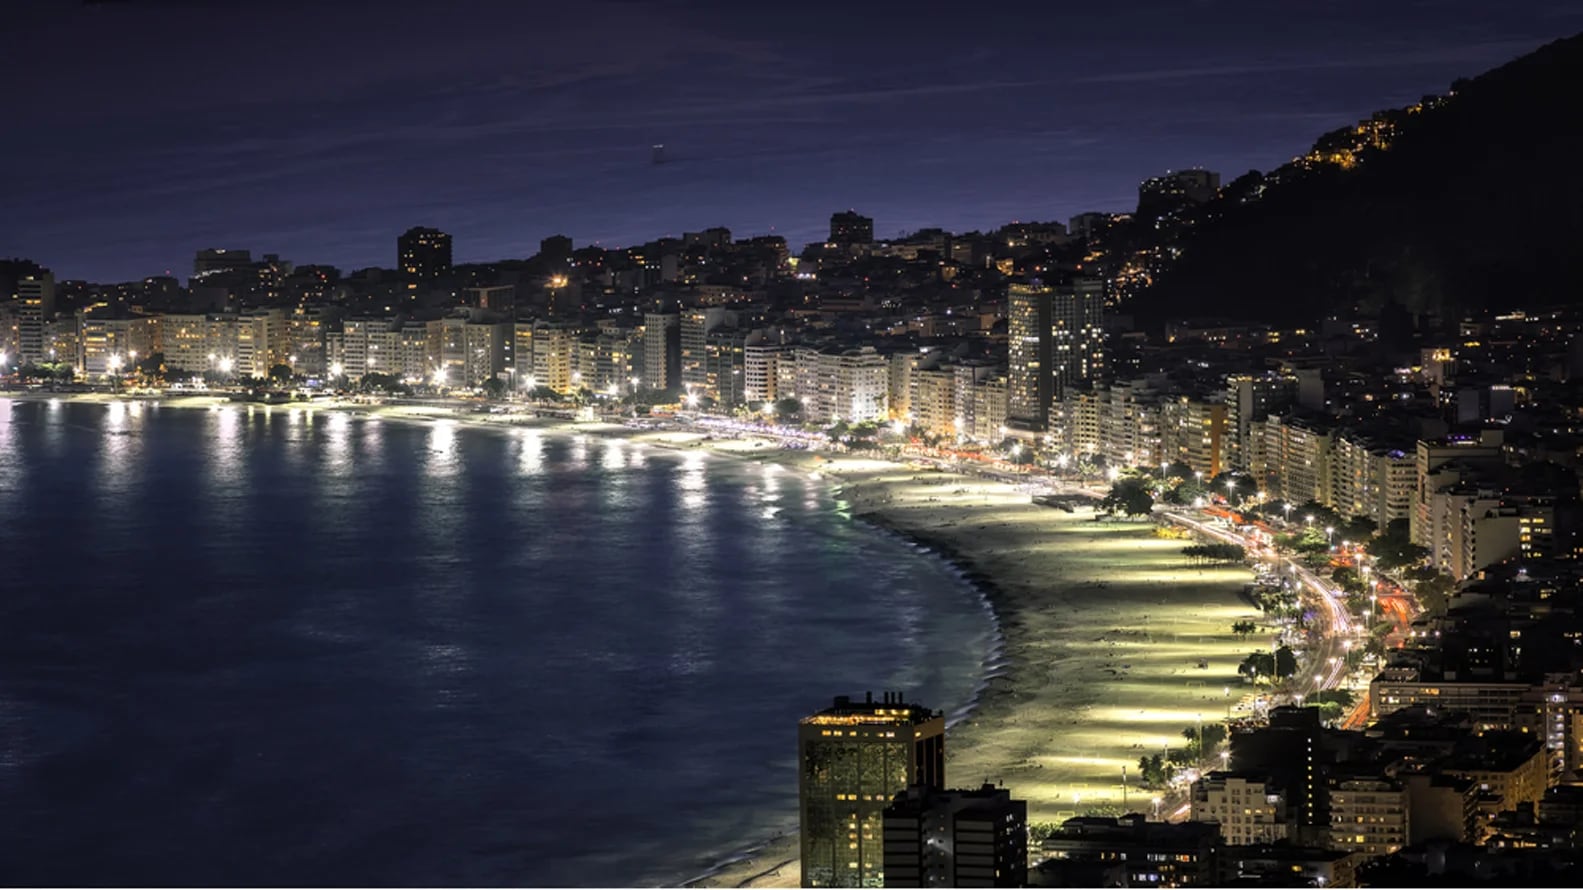 Río de Janeiro será la sede de los Juegos Olímpicos 2016, del 5 al 21 de agosto (Shutterstock)